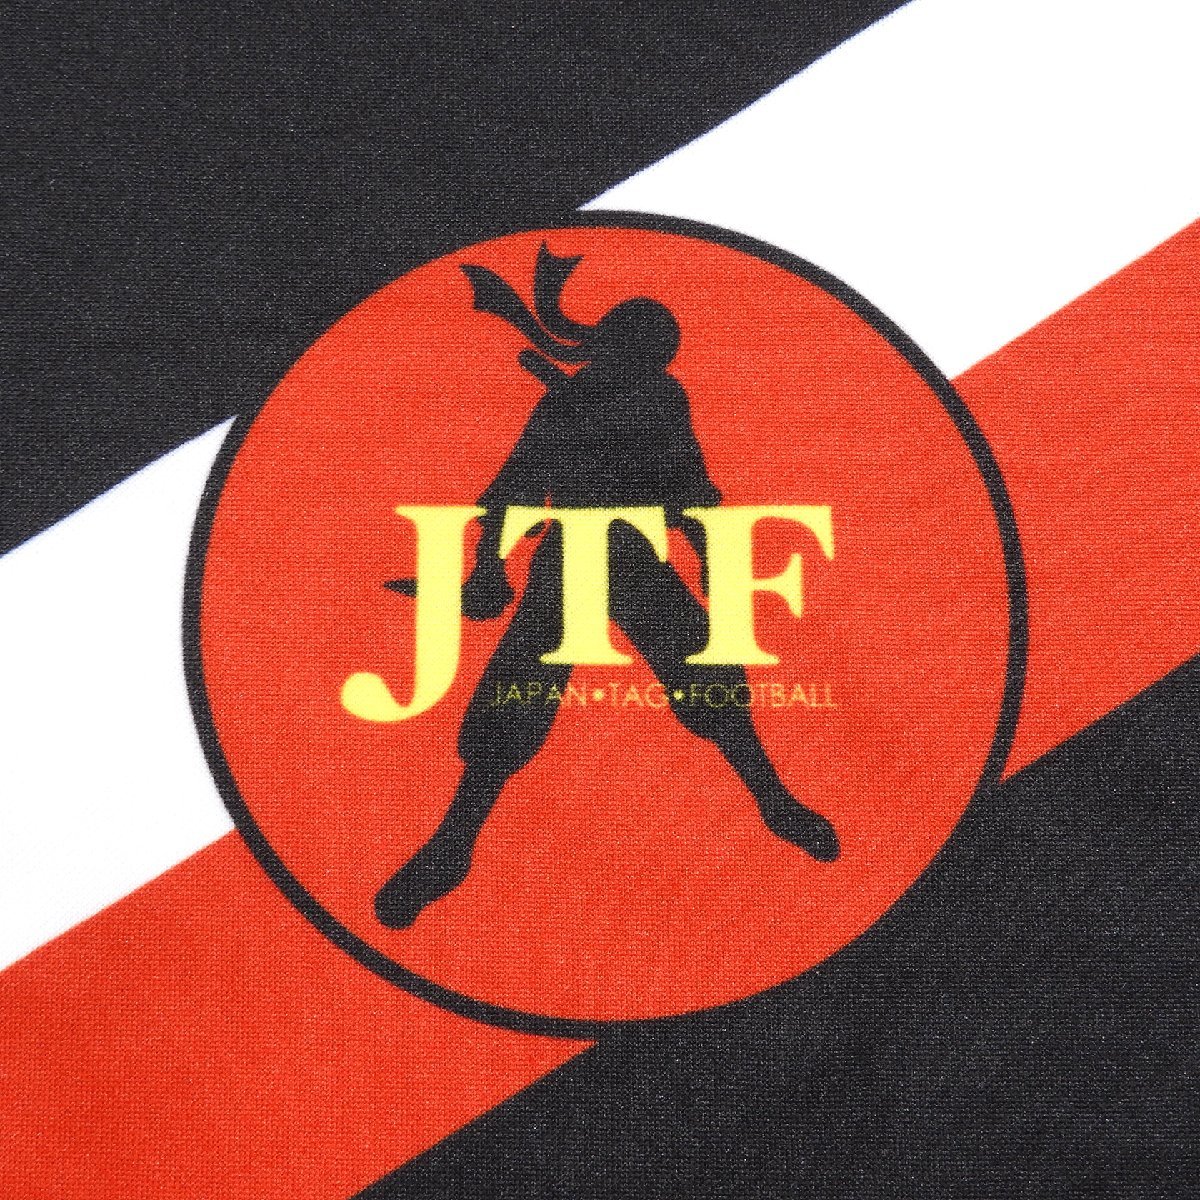 日本タグフットボール協会 半袖シャツ Size XL #10850 送料360円 JTF スポーツウエア_画像5